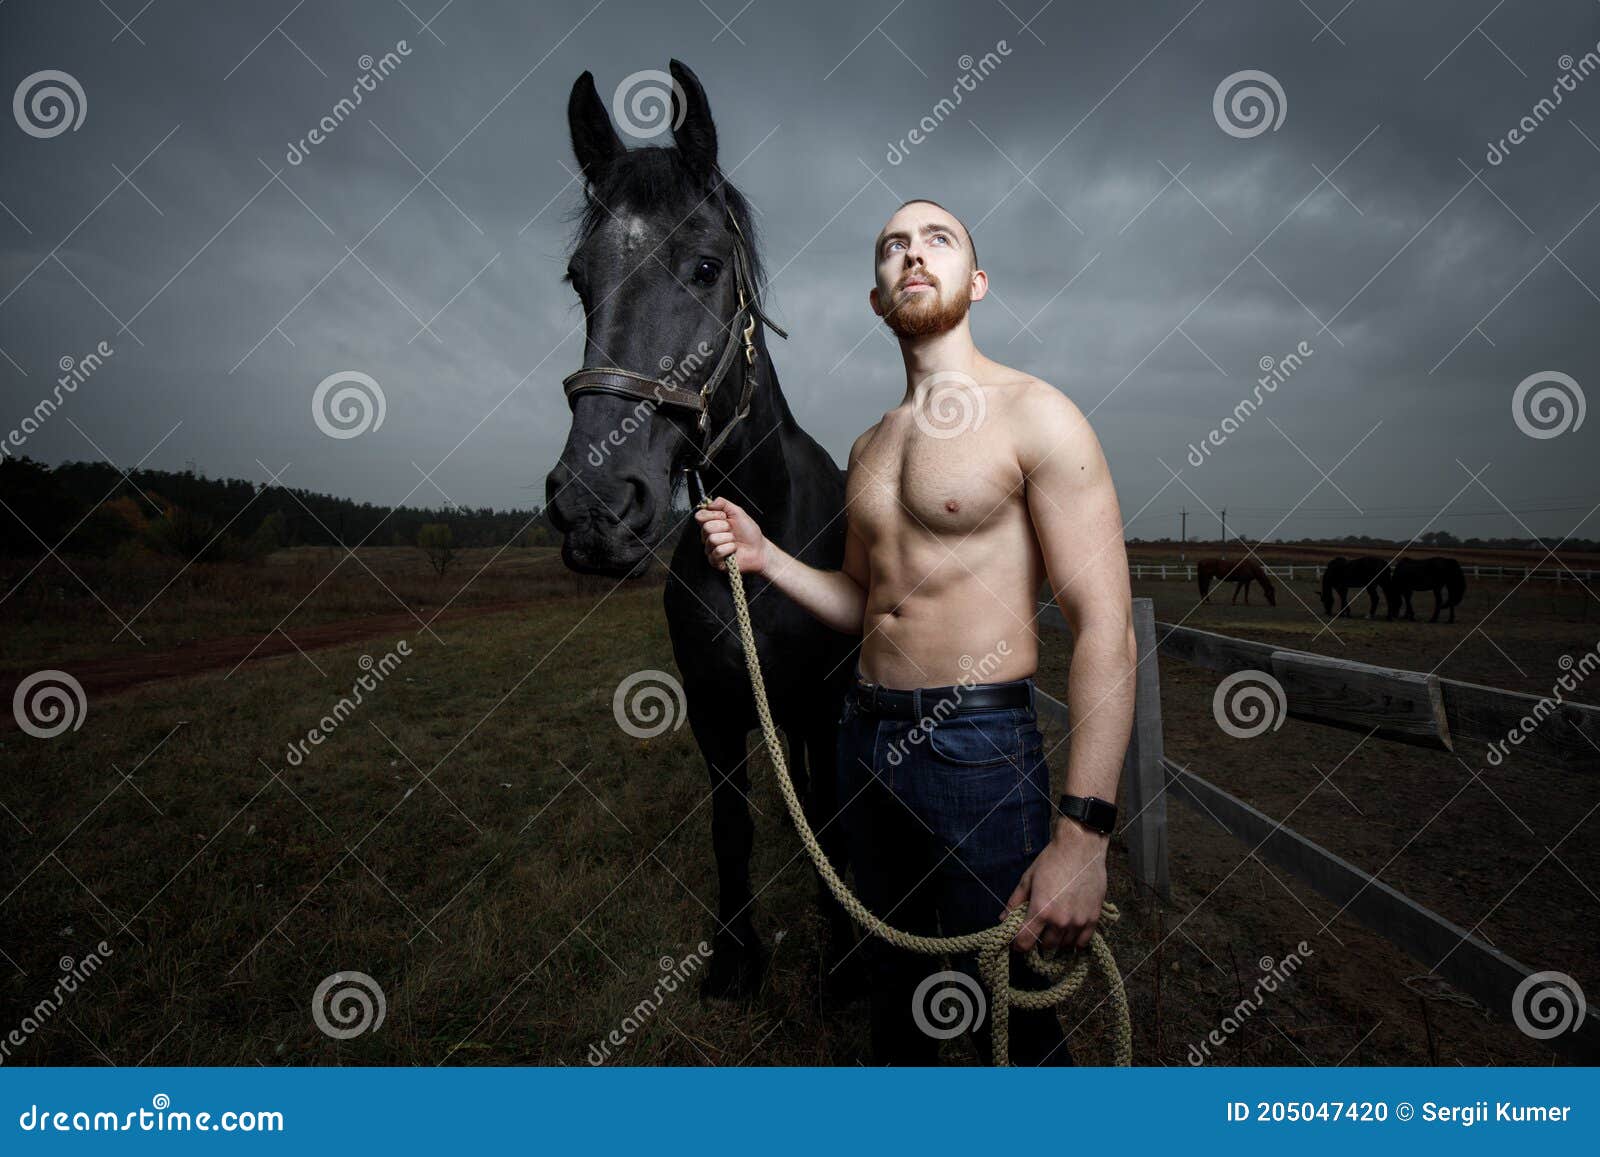 Three Men on a Horse nude photos